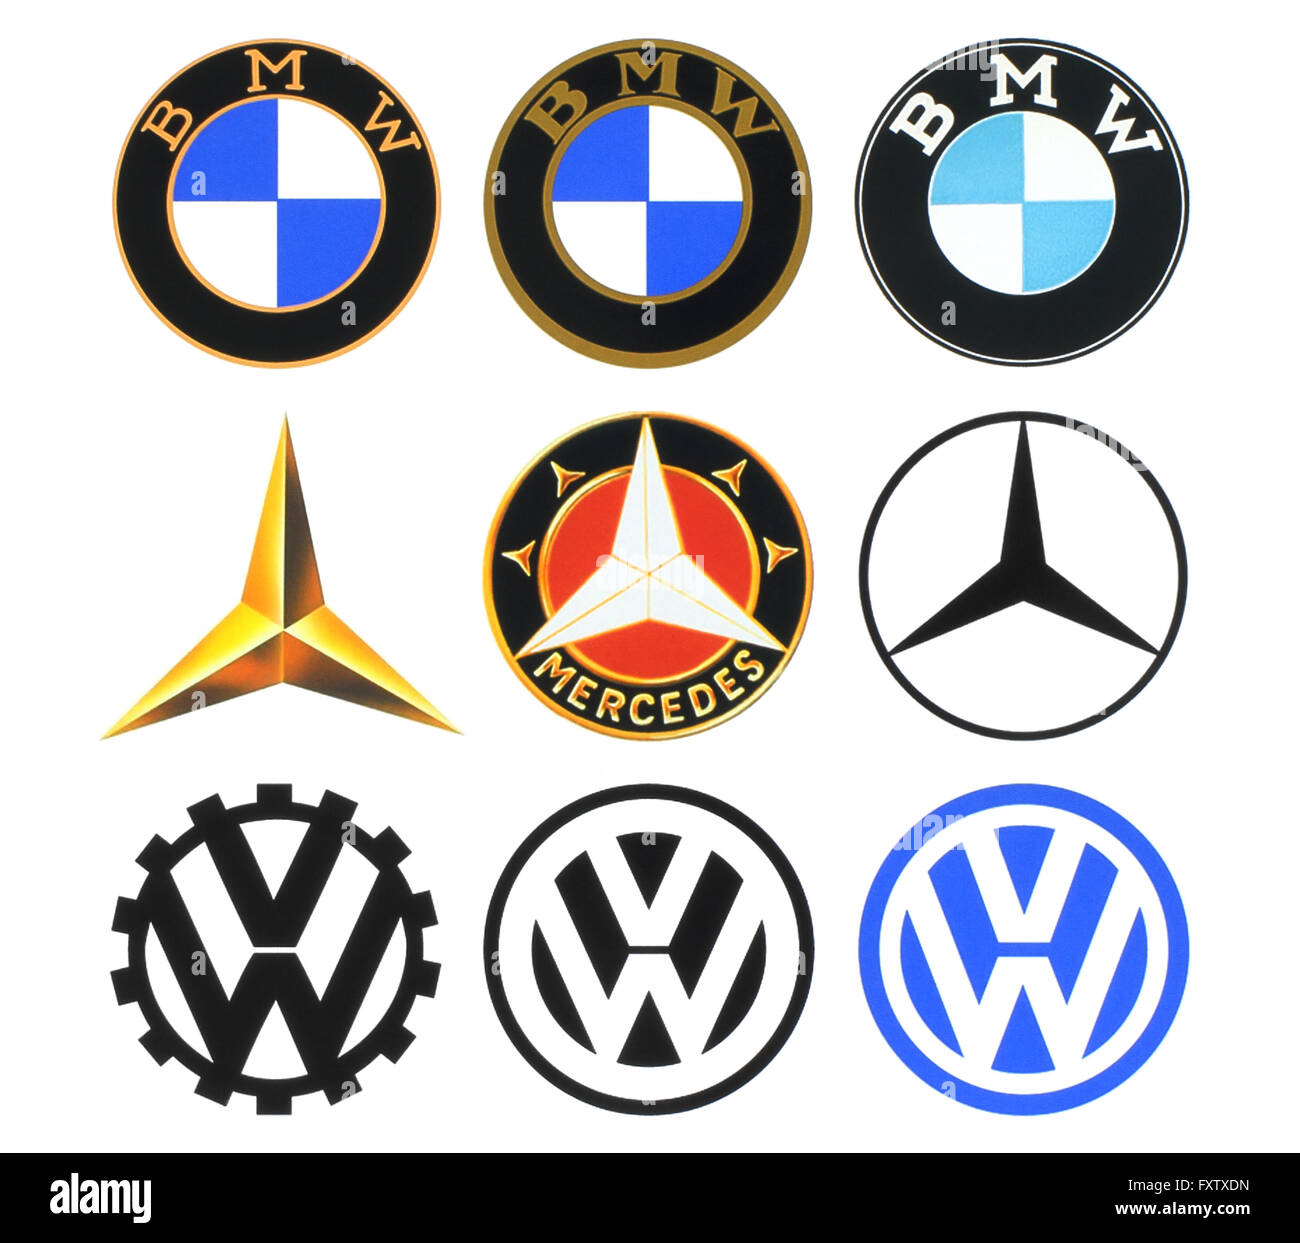 Sammlung von Logos / Auto Marke boot Abzeichen Stockfotografie - Alamy